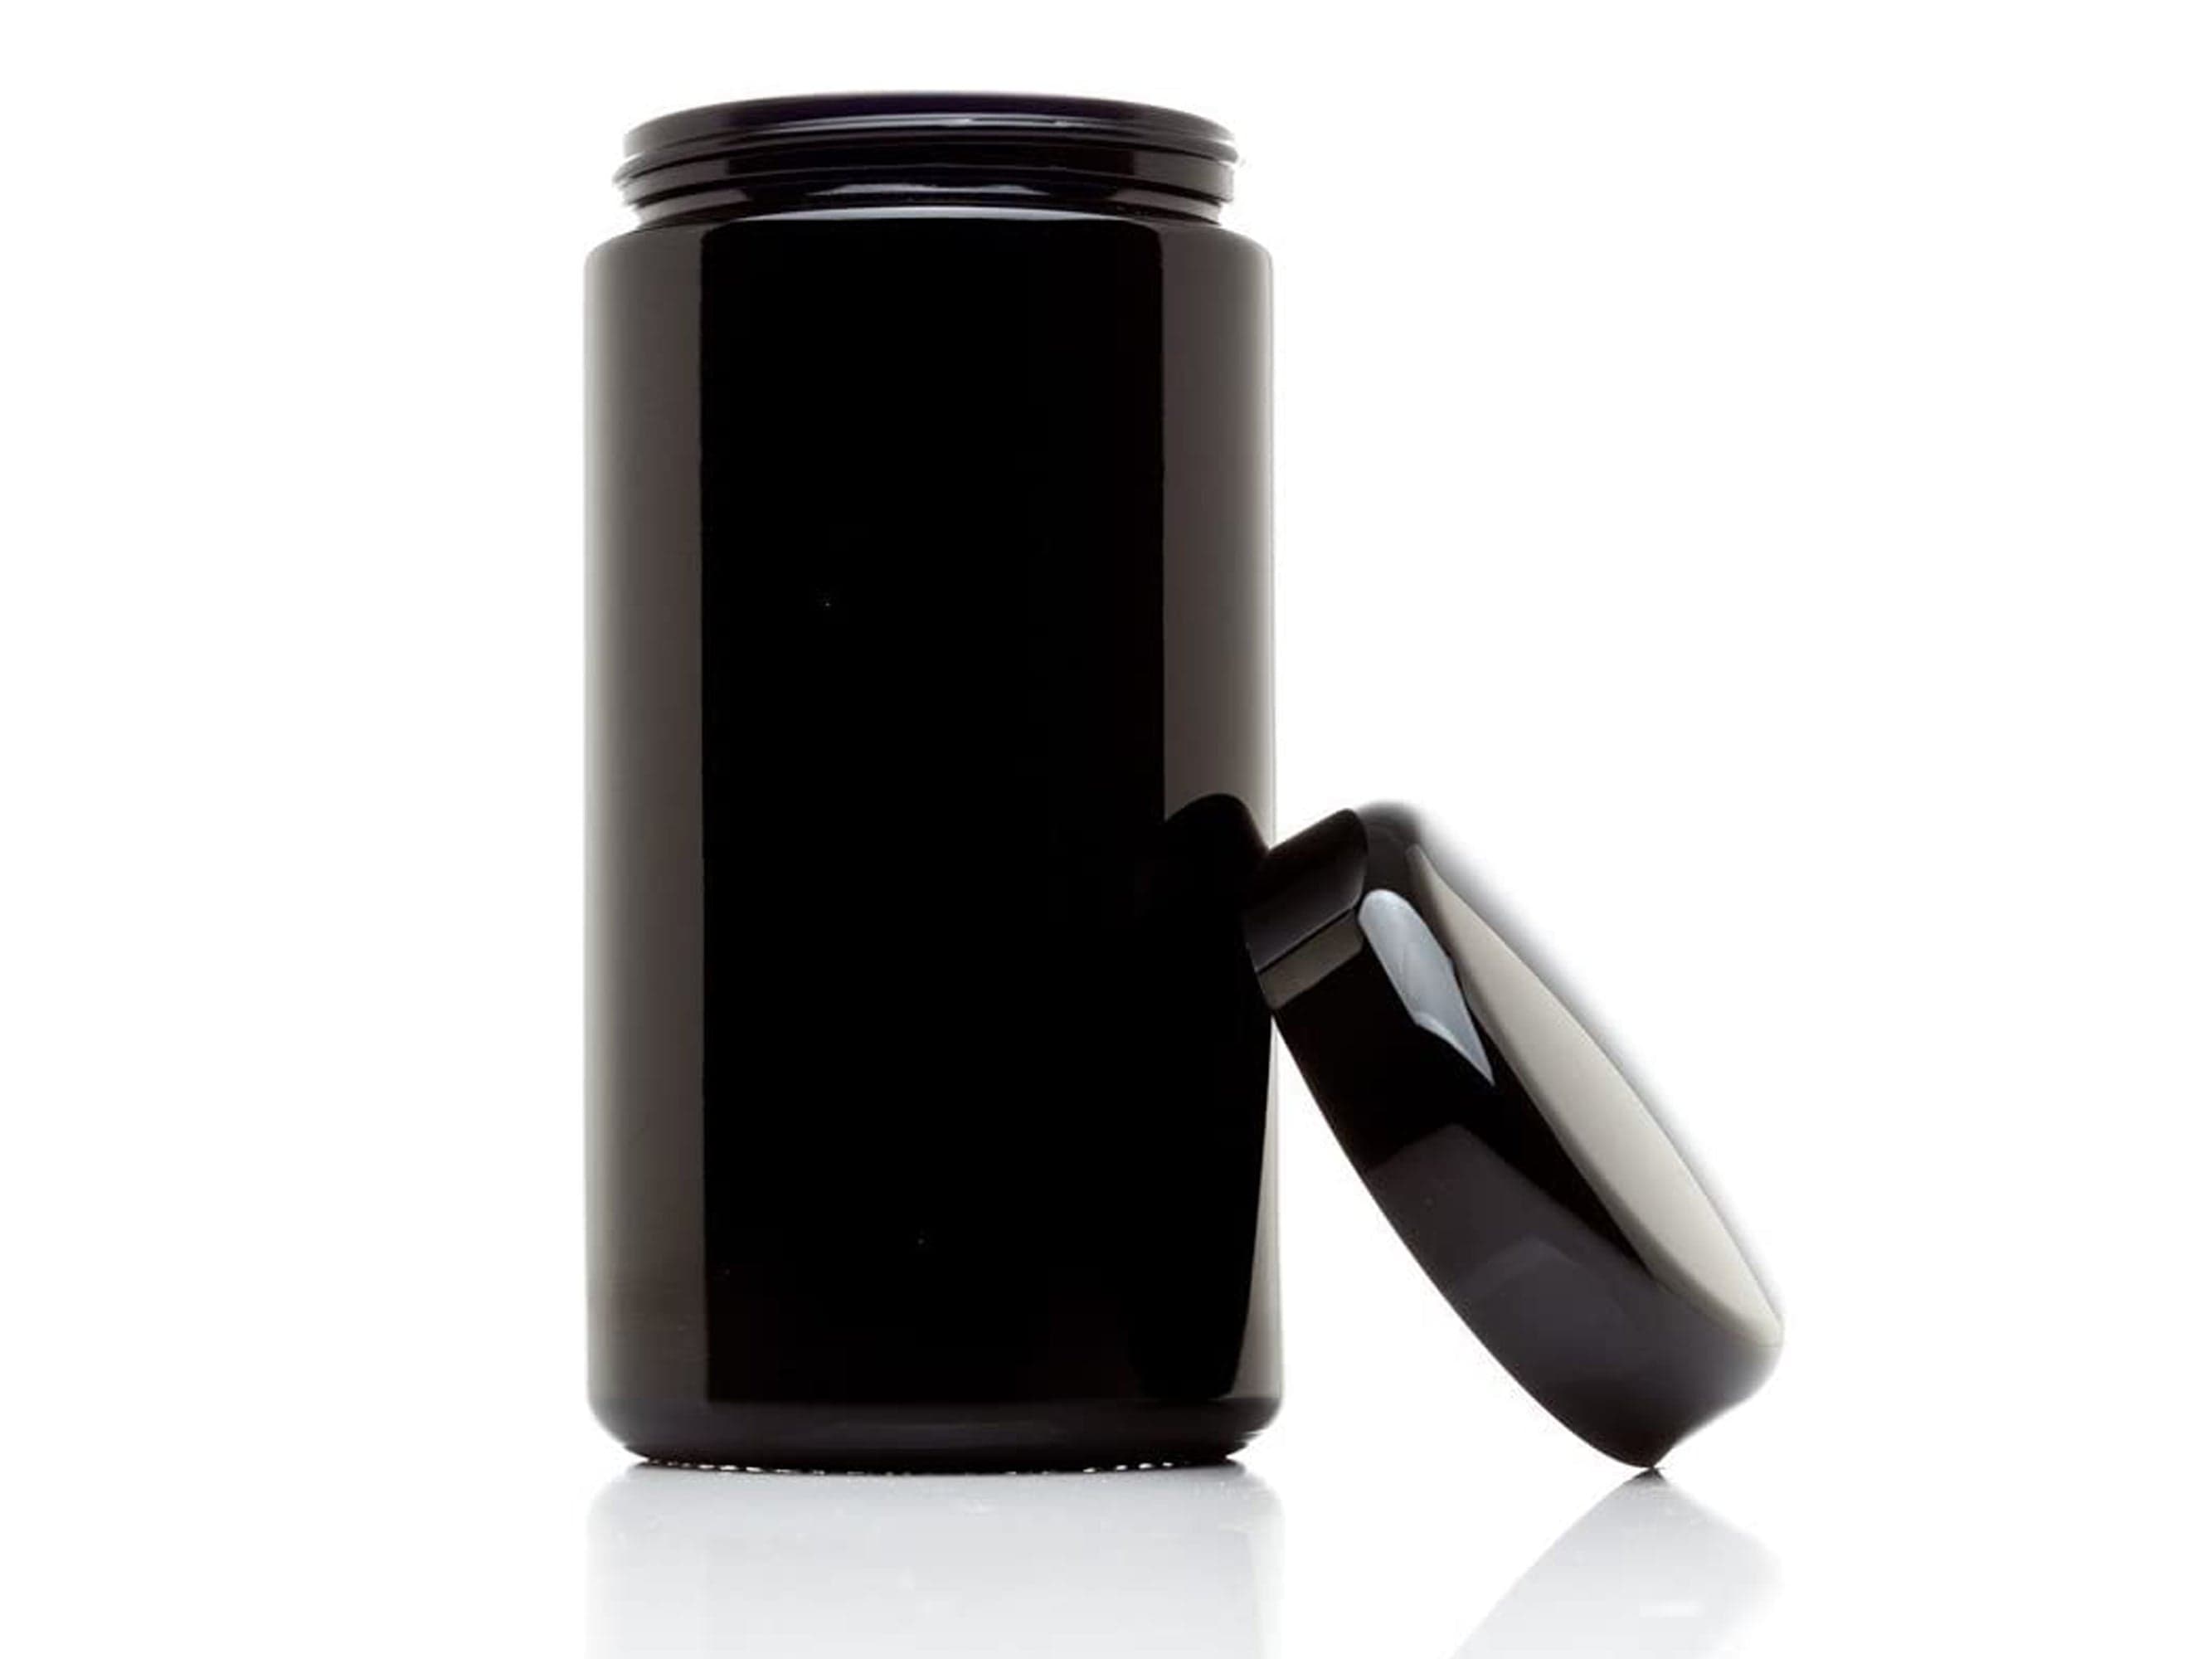 BL2100S-06 (Black Jar Base For Glass Jar)